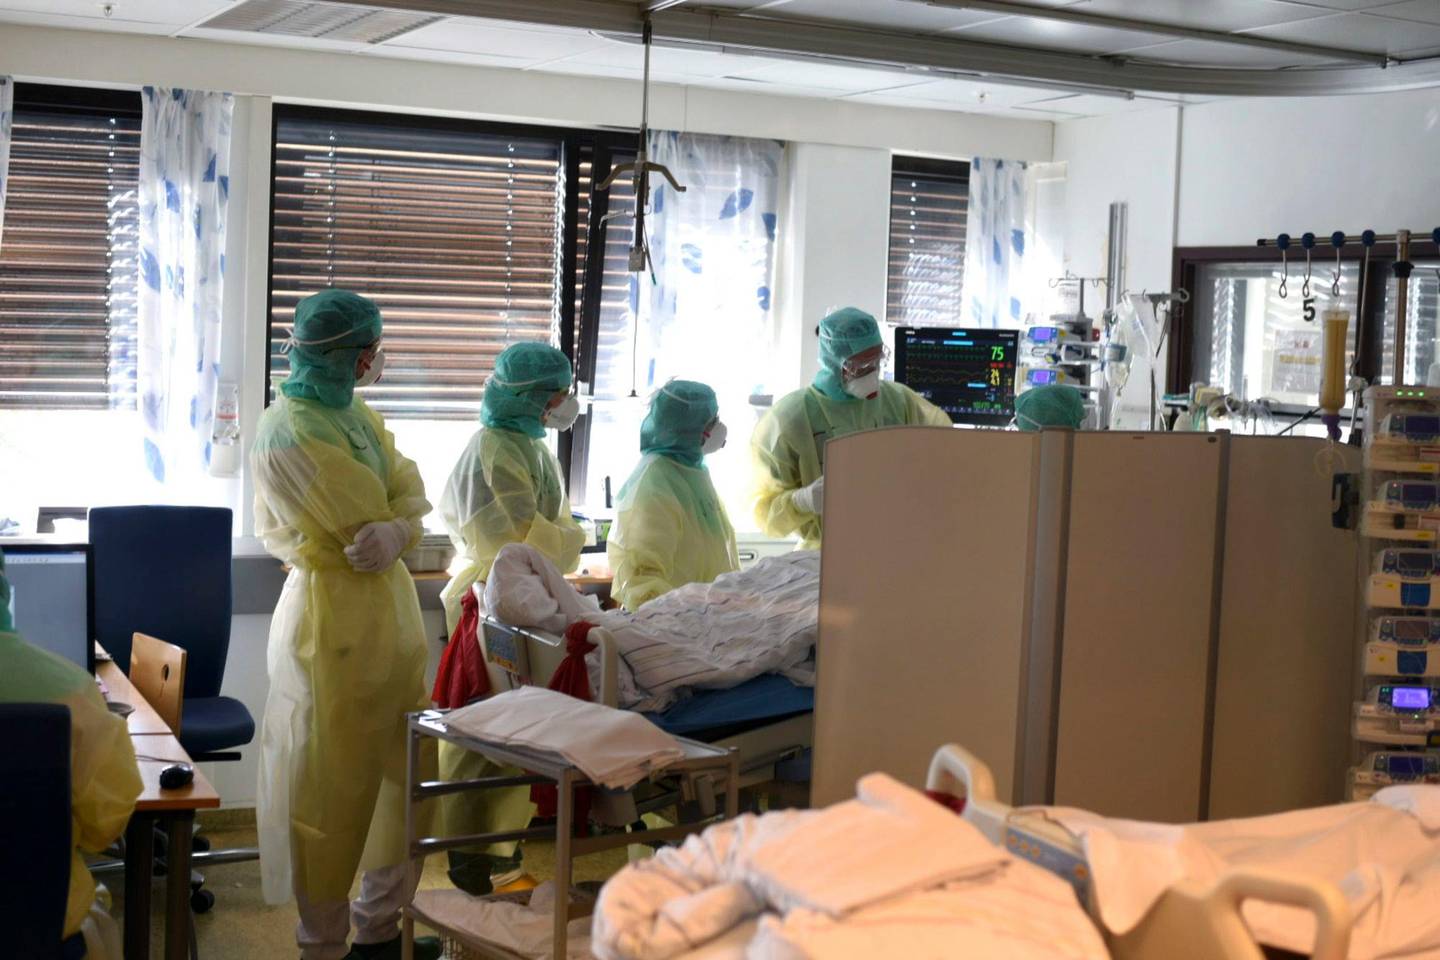 Bærum 20200417. 
Vestre Viken HF har selv tatt bilder fra innsiden av civid-posten på Bærum sykehus som viser personale iført smittevernutstyr  under behandling av koronasmittet pasient.
Foto: Vestre Viken HF / NTB